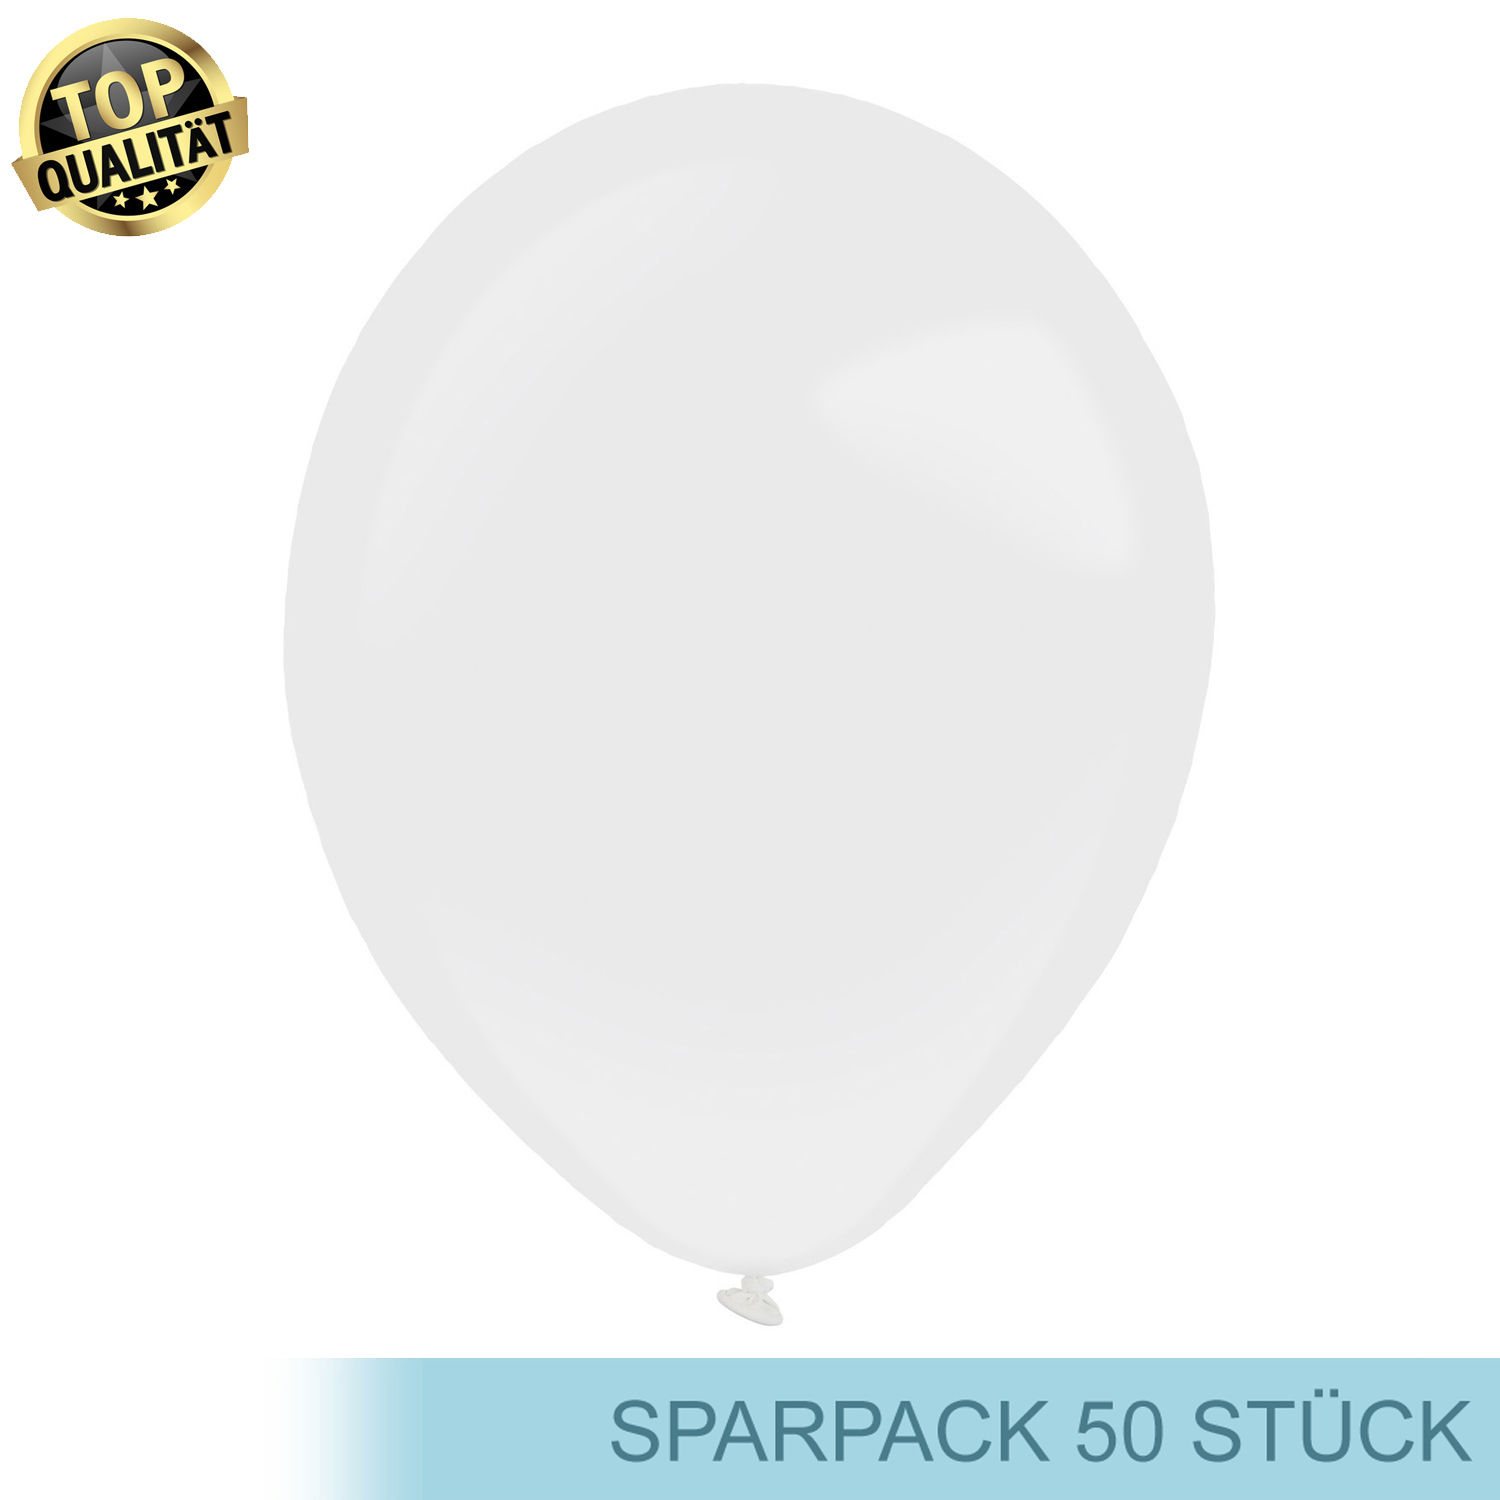 Premium Latex-Luftballon, rund, 50 Stück, ca. 27cm Durchmesser, Weiß / Frosty White - Ideal für viele Dekorationen